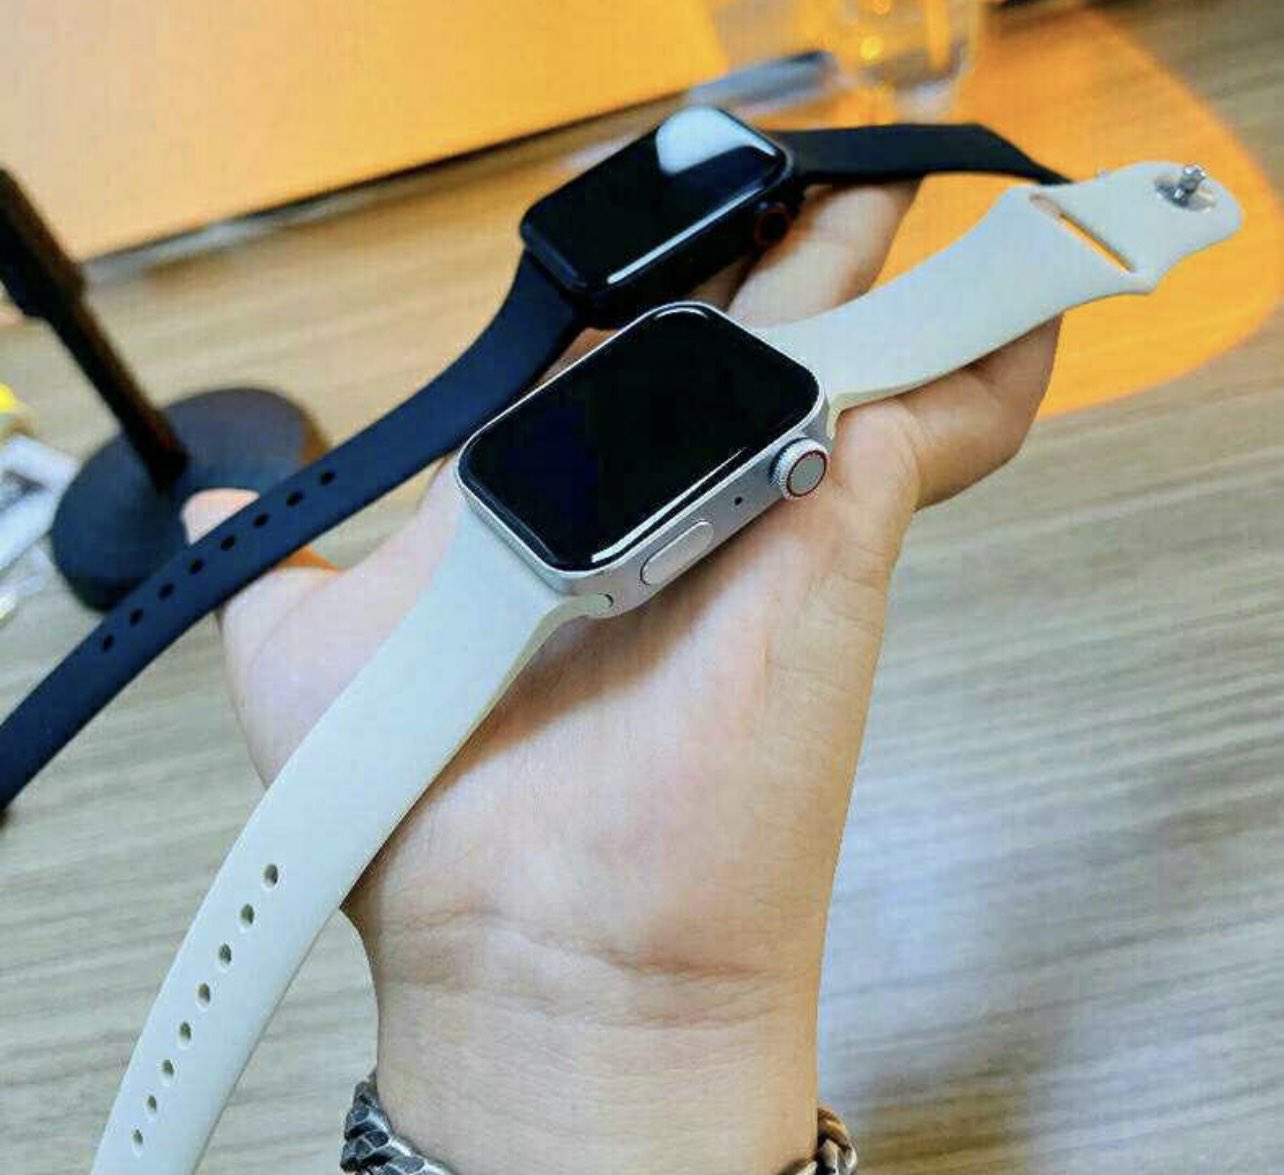 موقعك يقاوم نقي  Apple Watch Series 7 Knock-off is already on sale in China, appears in real  skin - Gizmochina